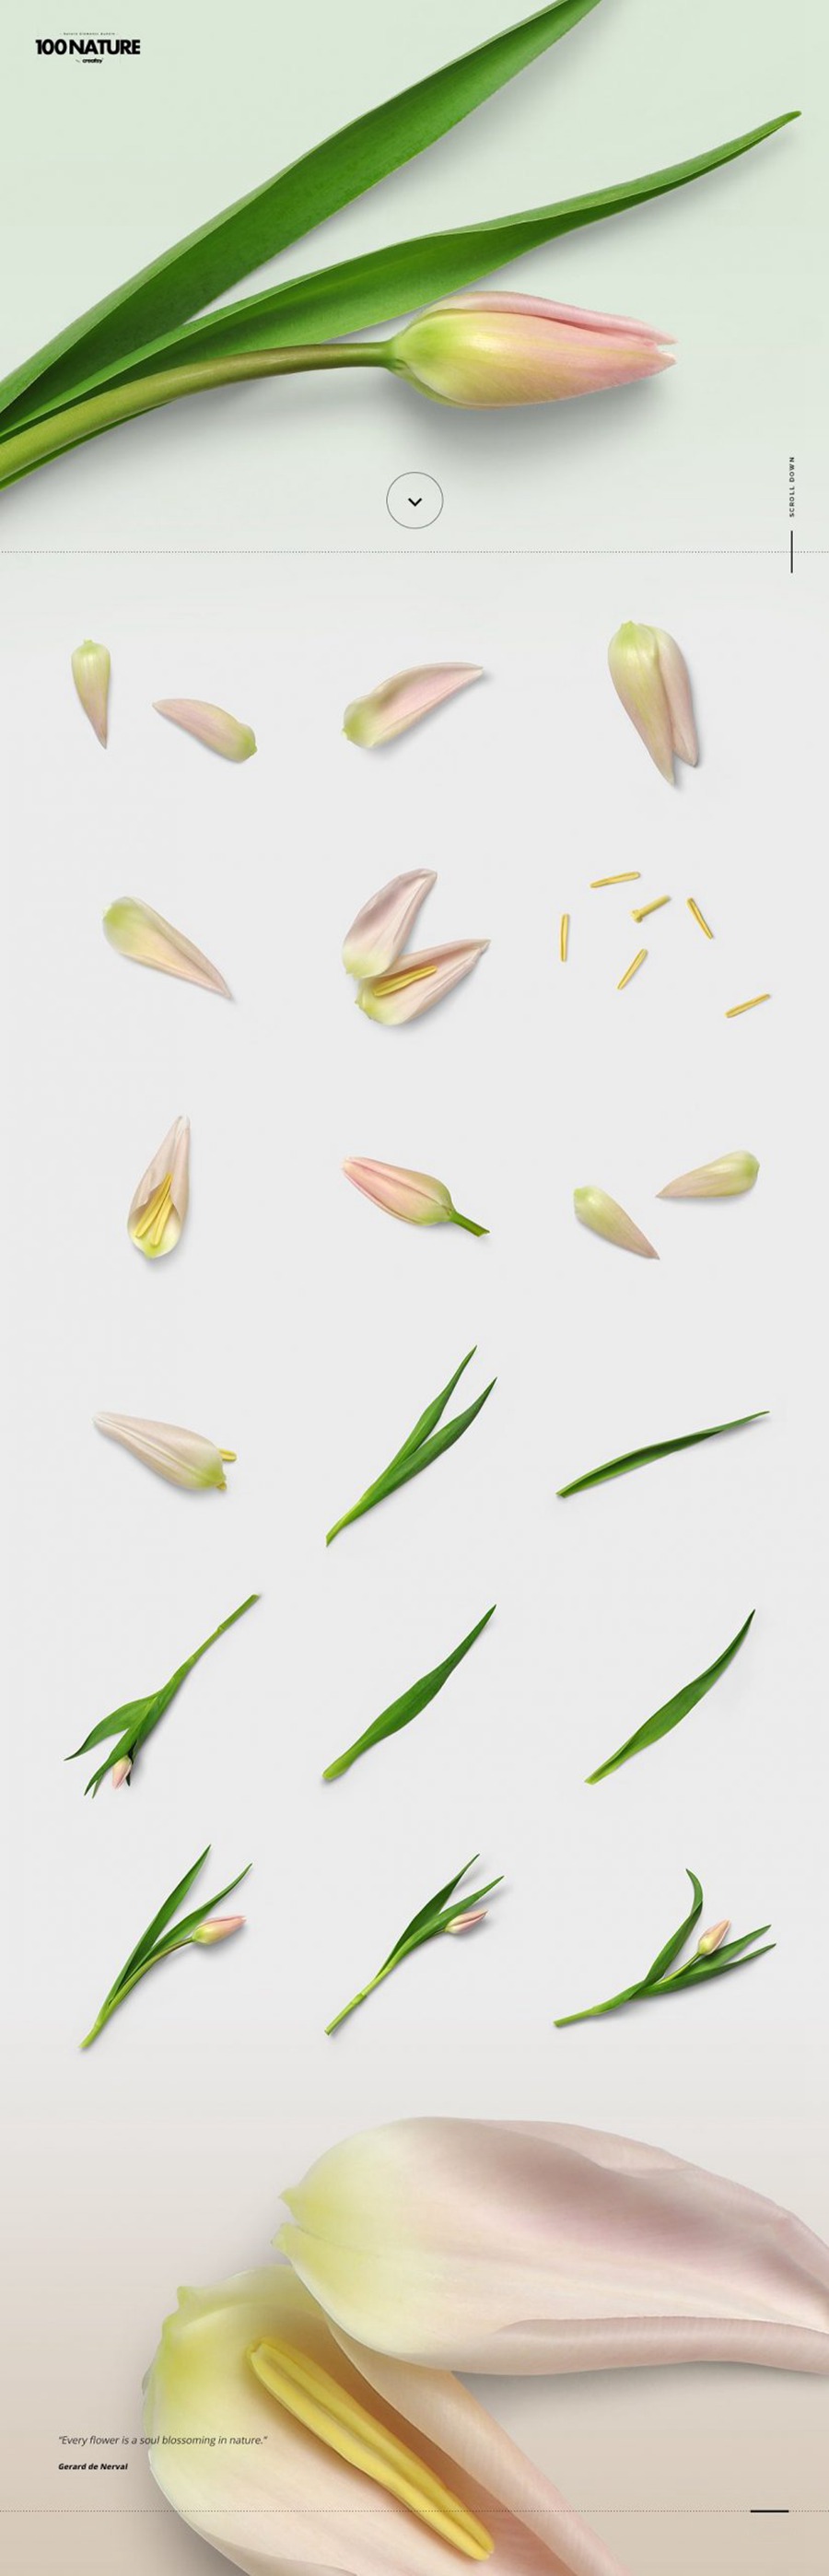 100款绿色花卉自然植物元素tif格式高质量图片素材套装 图片素材 第2张